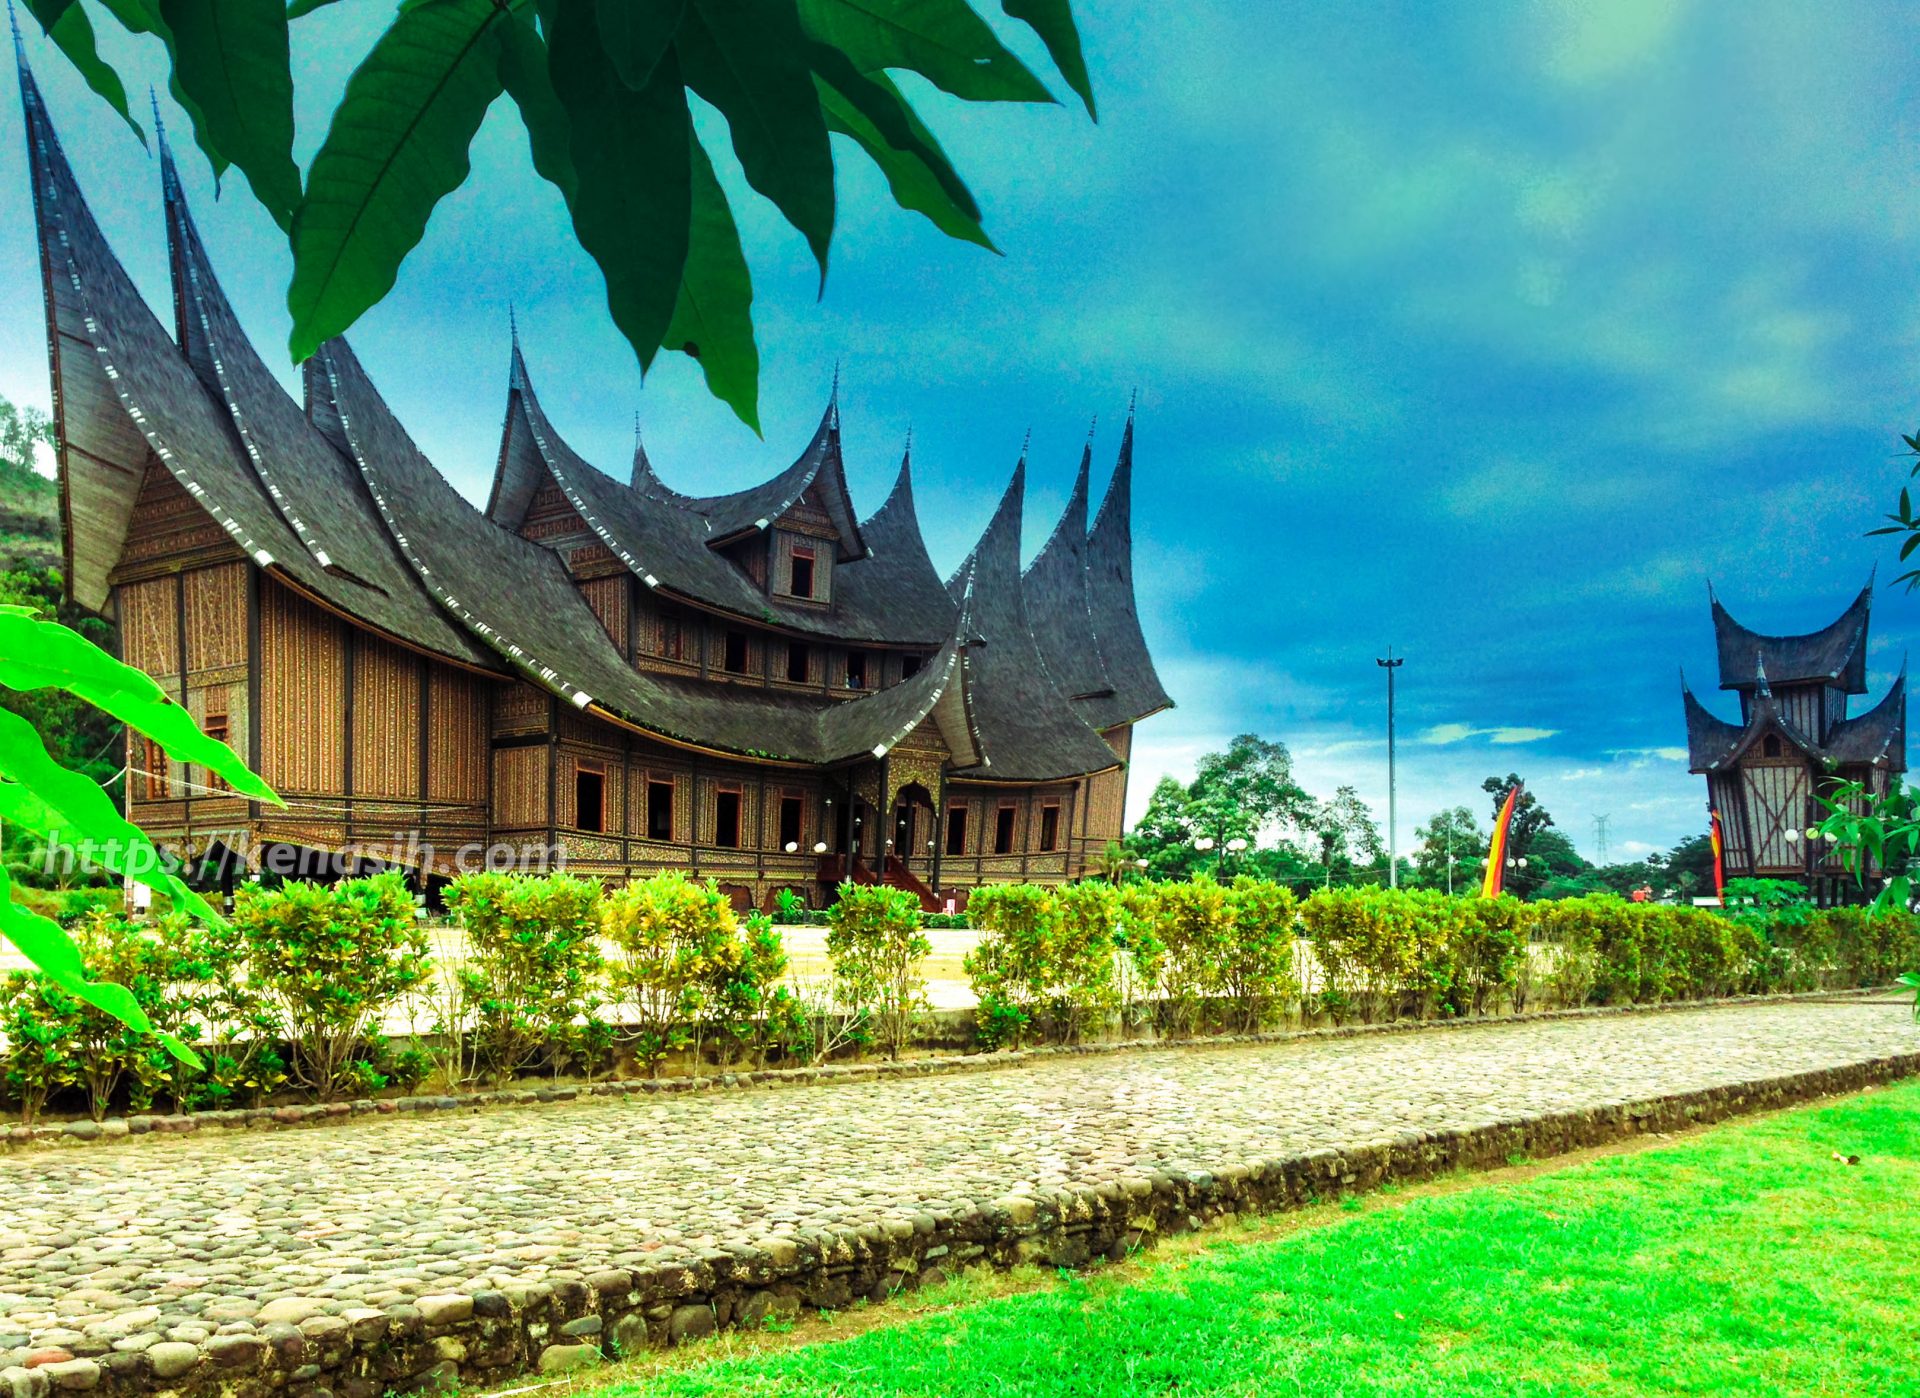 istana-pagaruyung-keindahan-arsitektur-dan-warisan-budaya-minangkabau